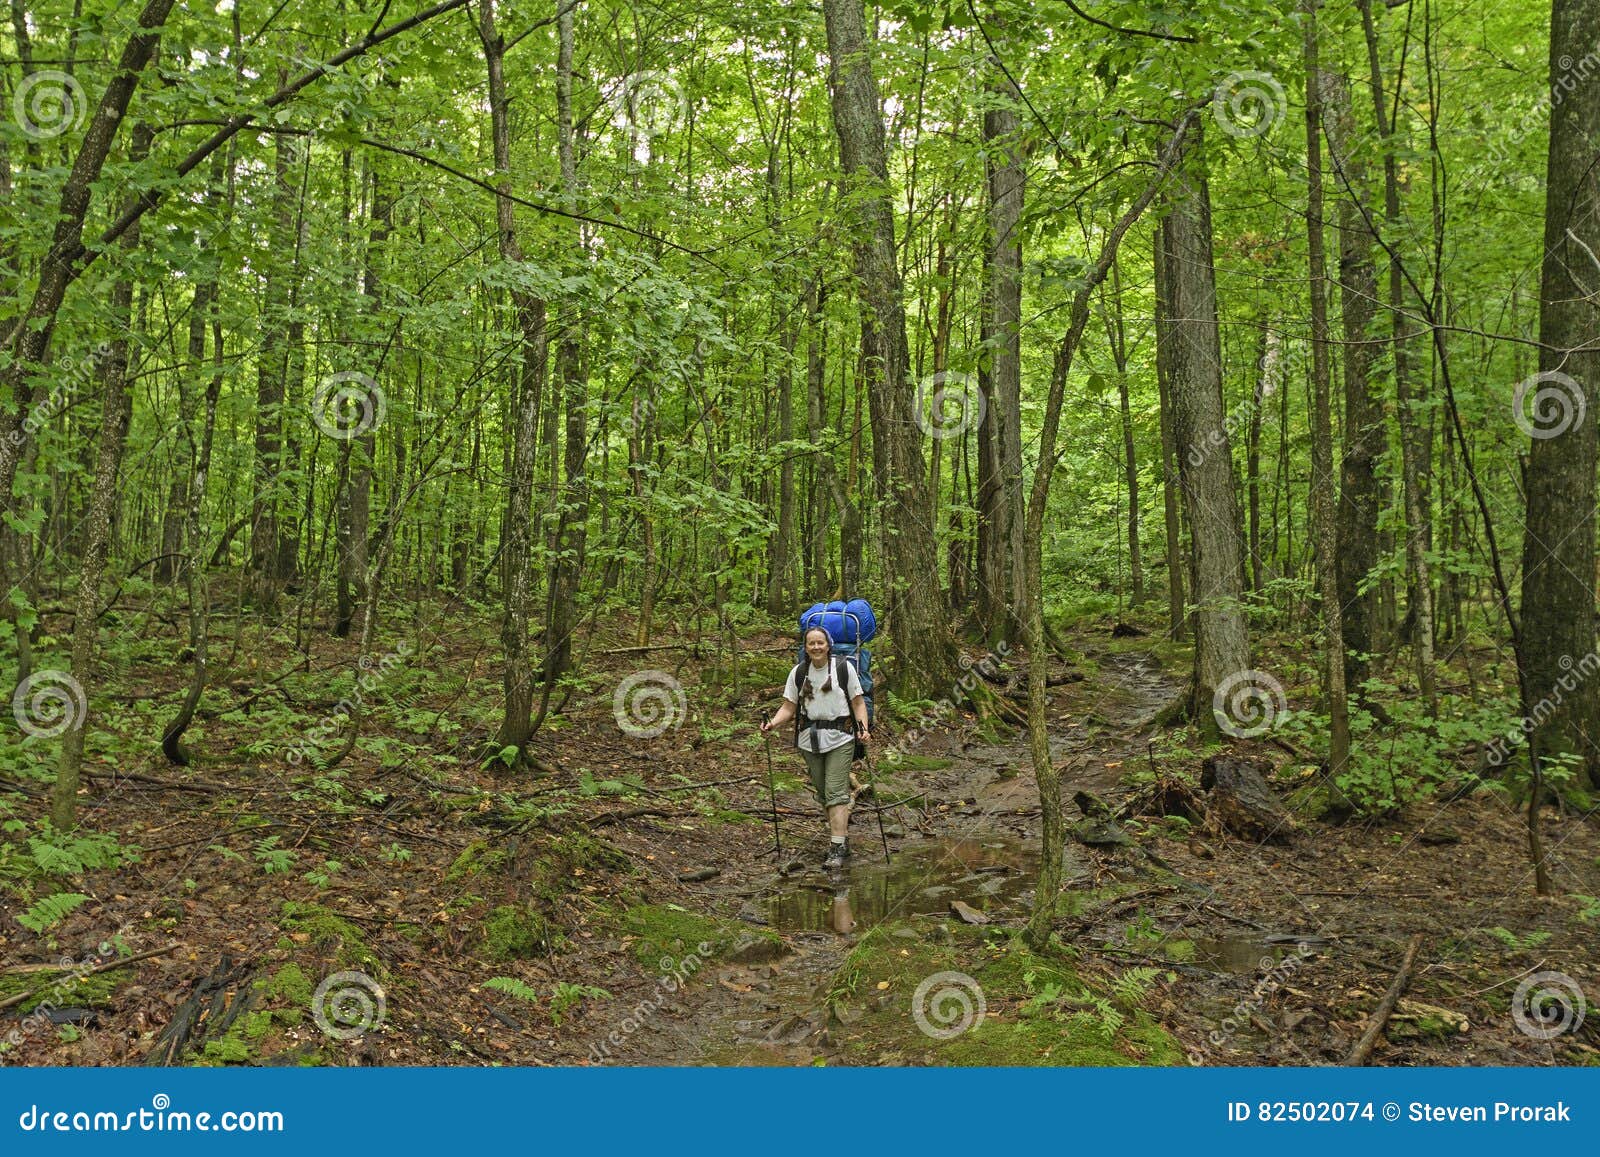 trekking through a verdant forest